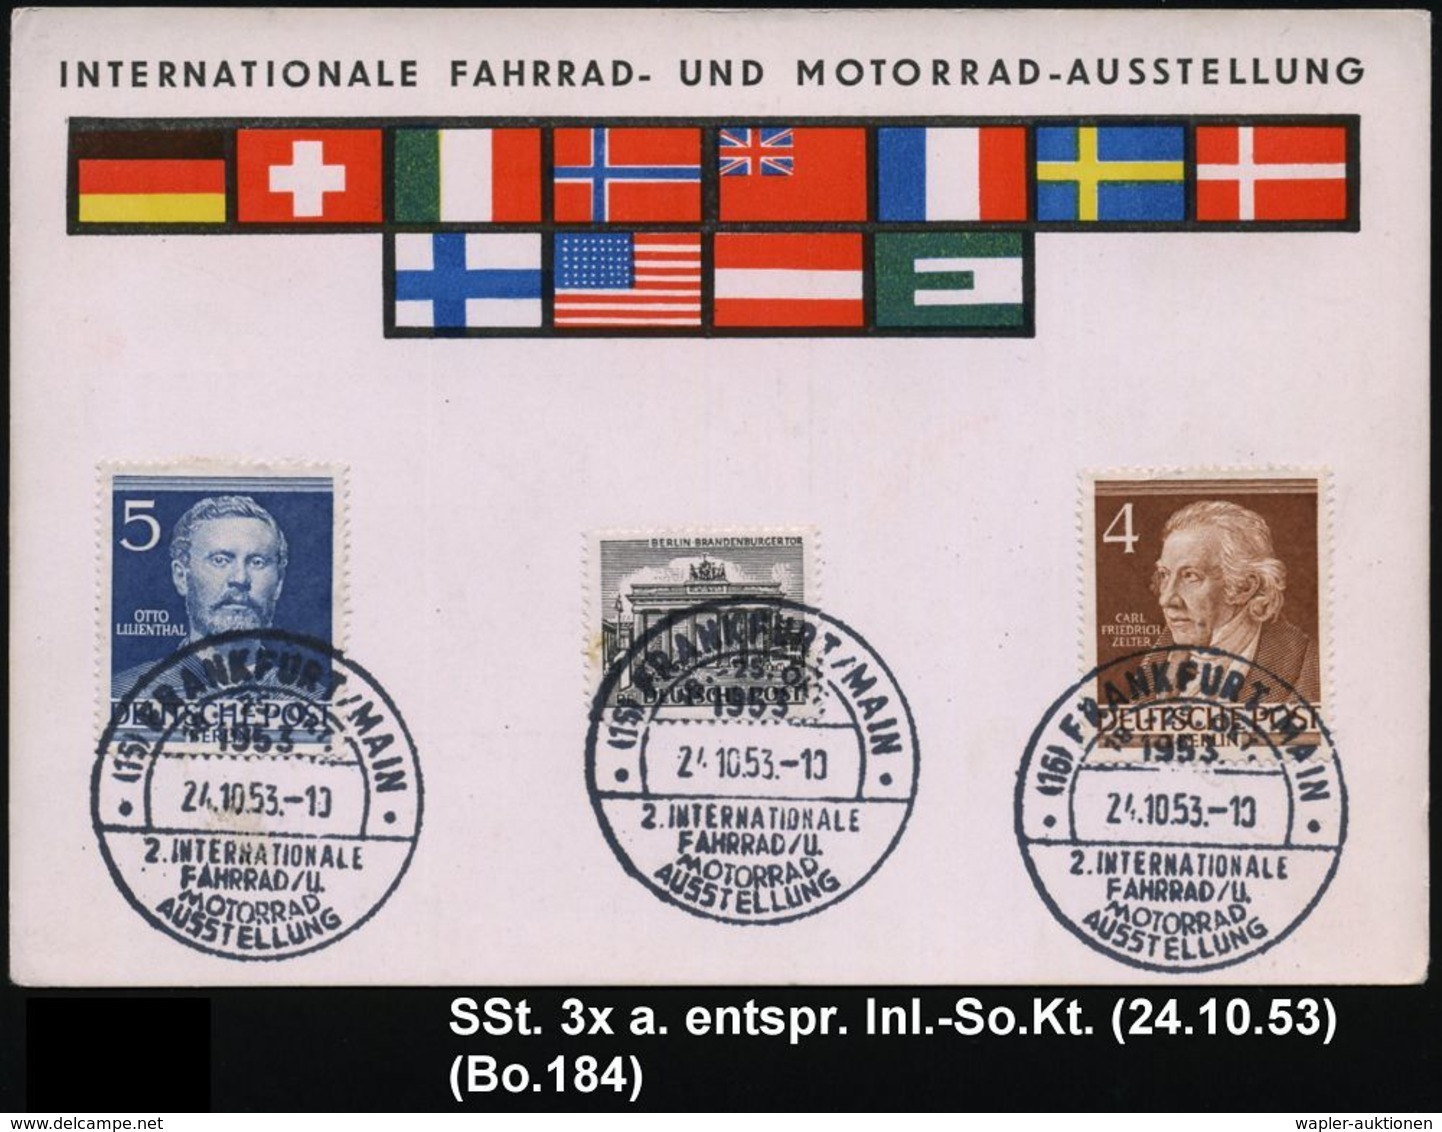 (16) FRANKFURT/ MAIN/ 2.INTERNAT./ FAHRRAD-u./ MOTORRAD/ AUSSTELLUNG 1953 (24.10.) SSt 3x Klar Rs. Auf Inl.-Sonderkarte  - Autres (Terre)